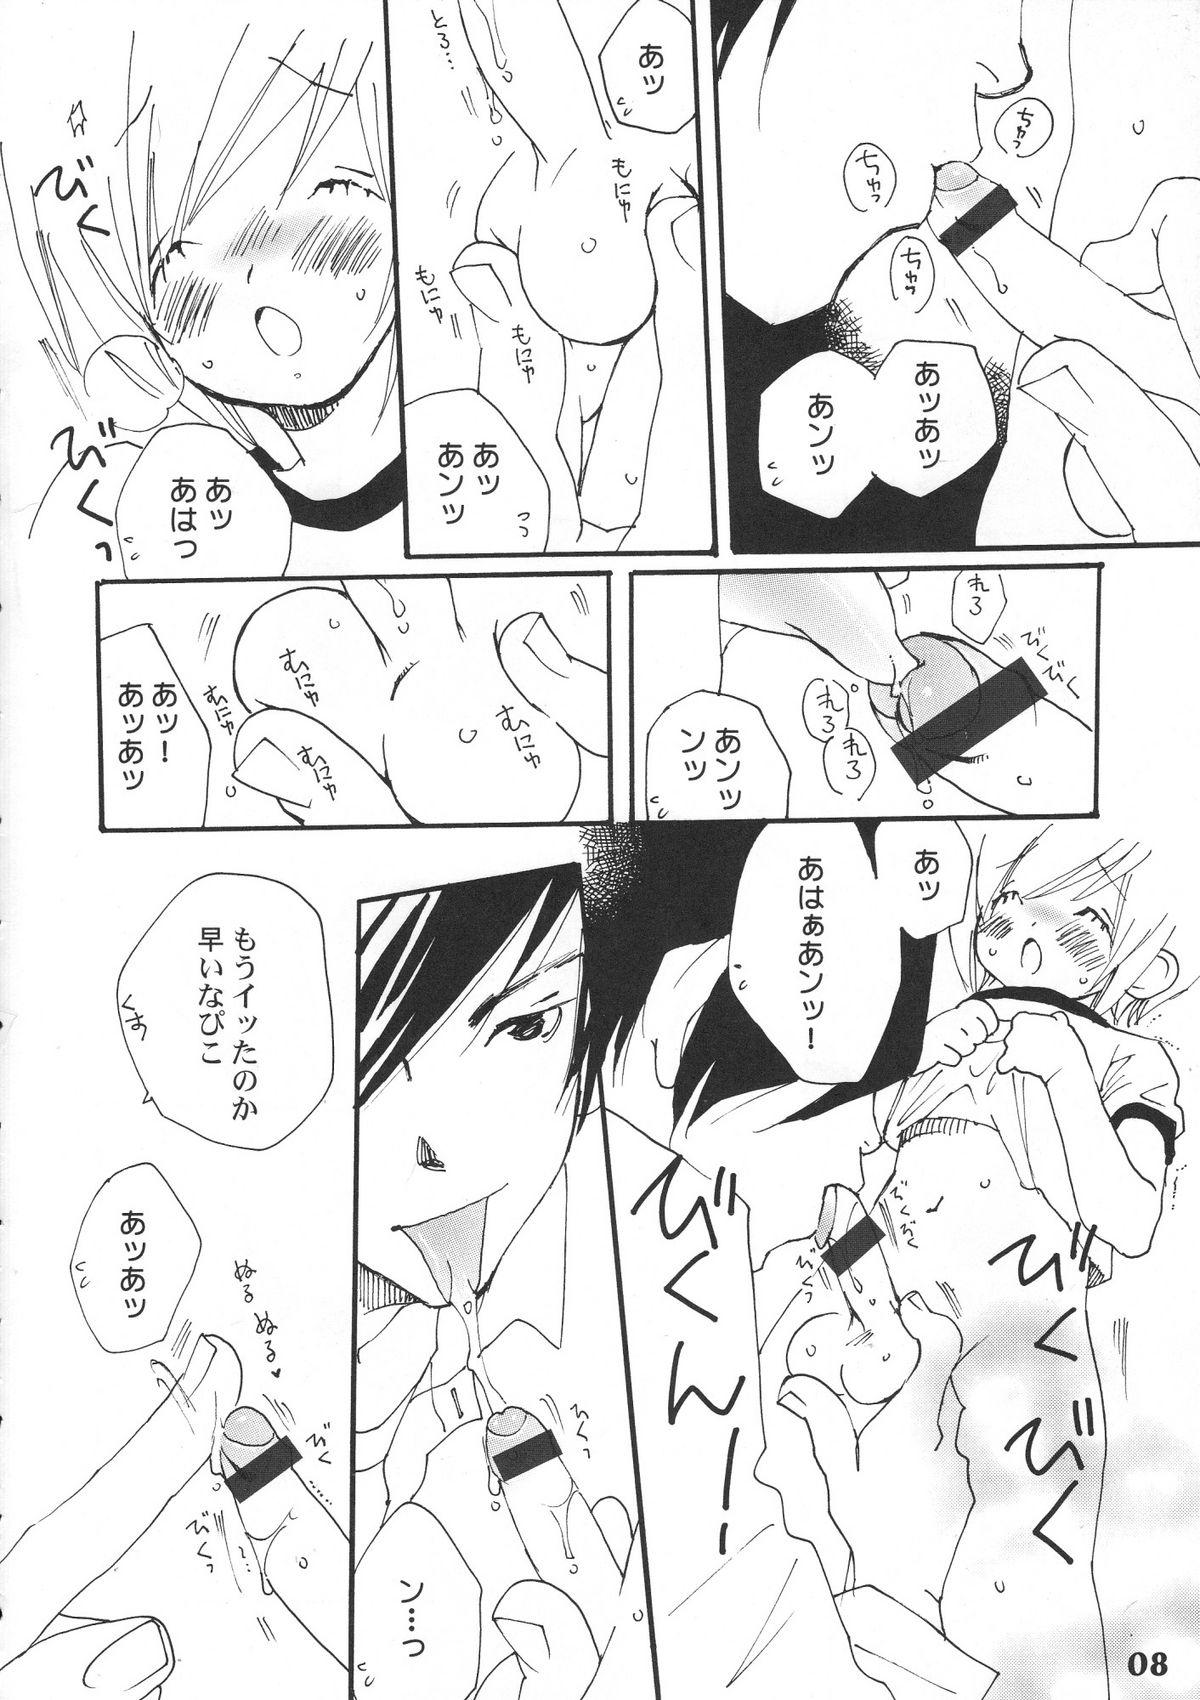 Orgasmus Bokutachi! Shotappuru!! - Boku no pico Insertion - Page 8